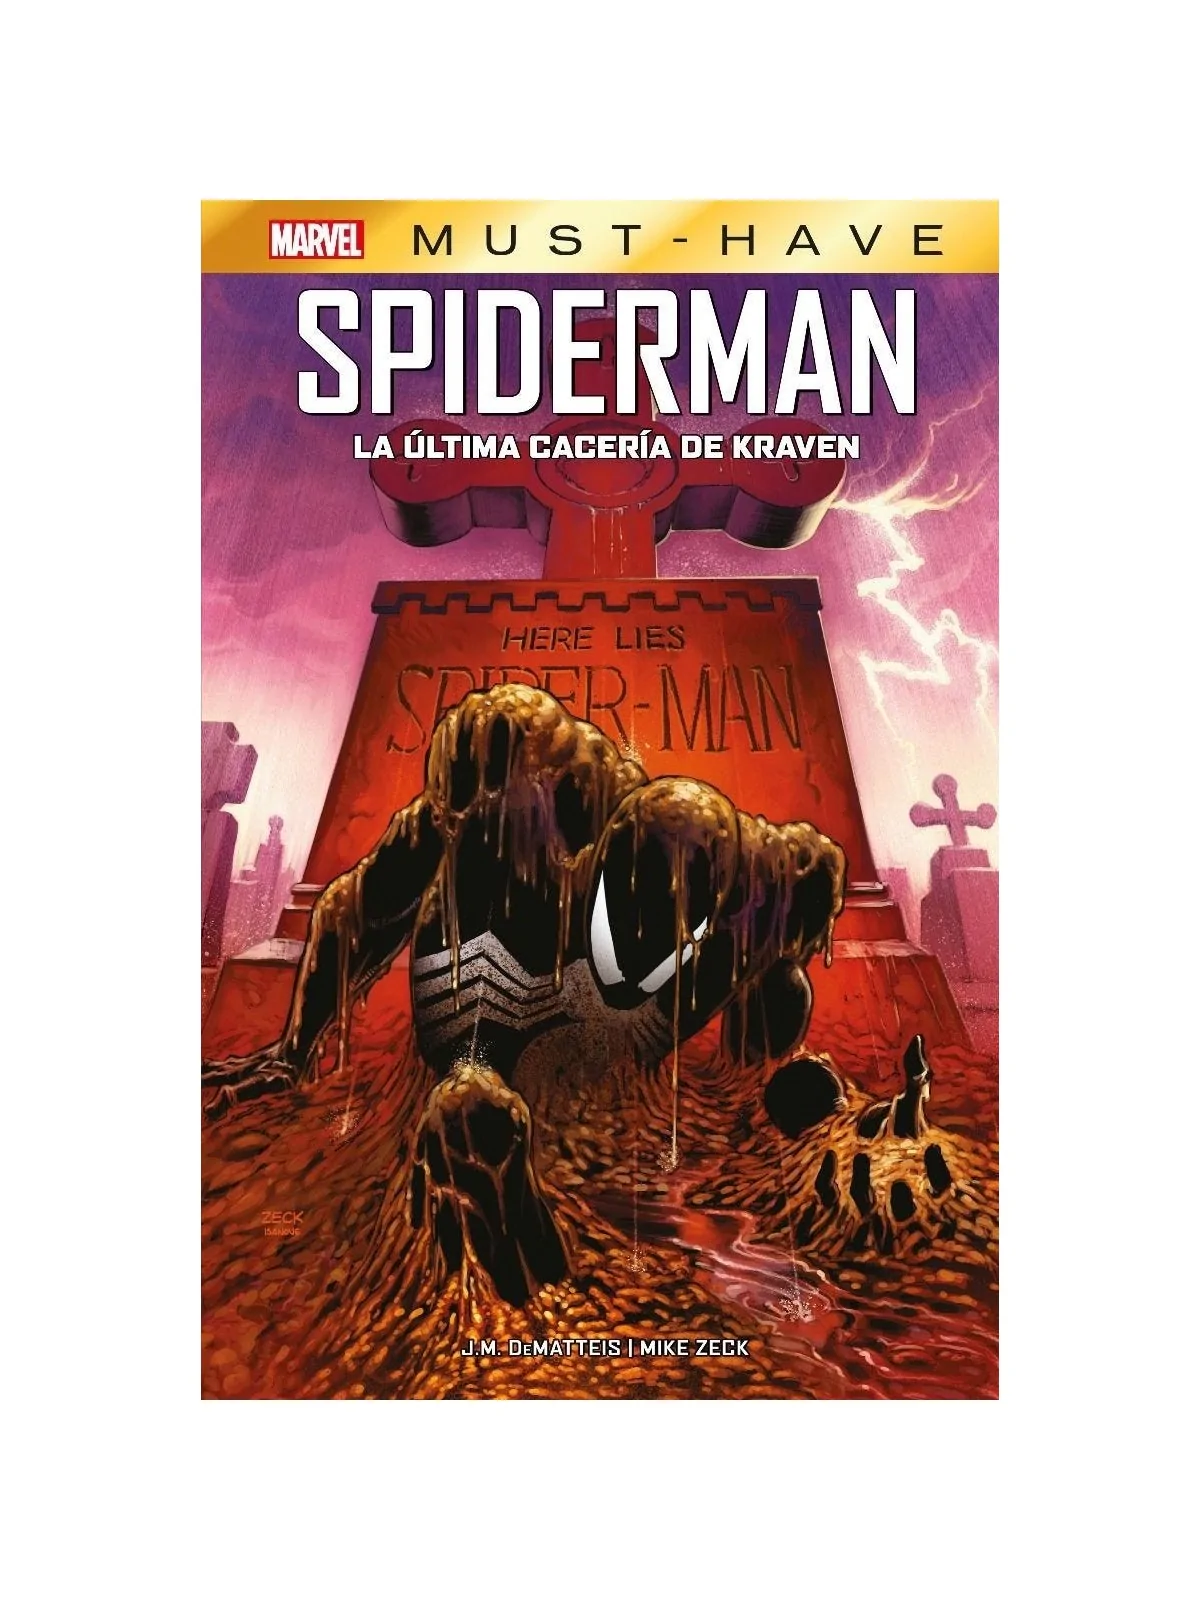 Comprar Marvel Must-Have - Spiderman: La Última Cacería de Kraven bara